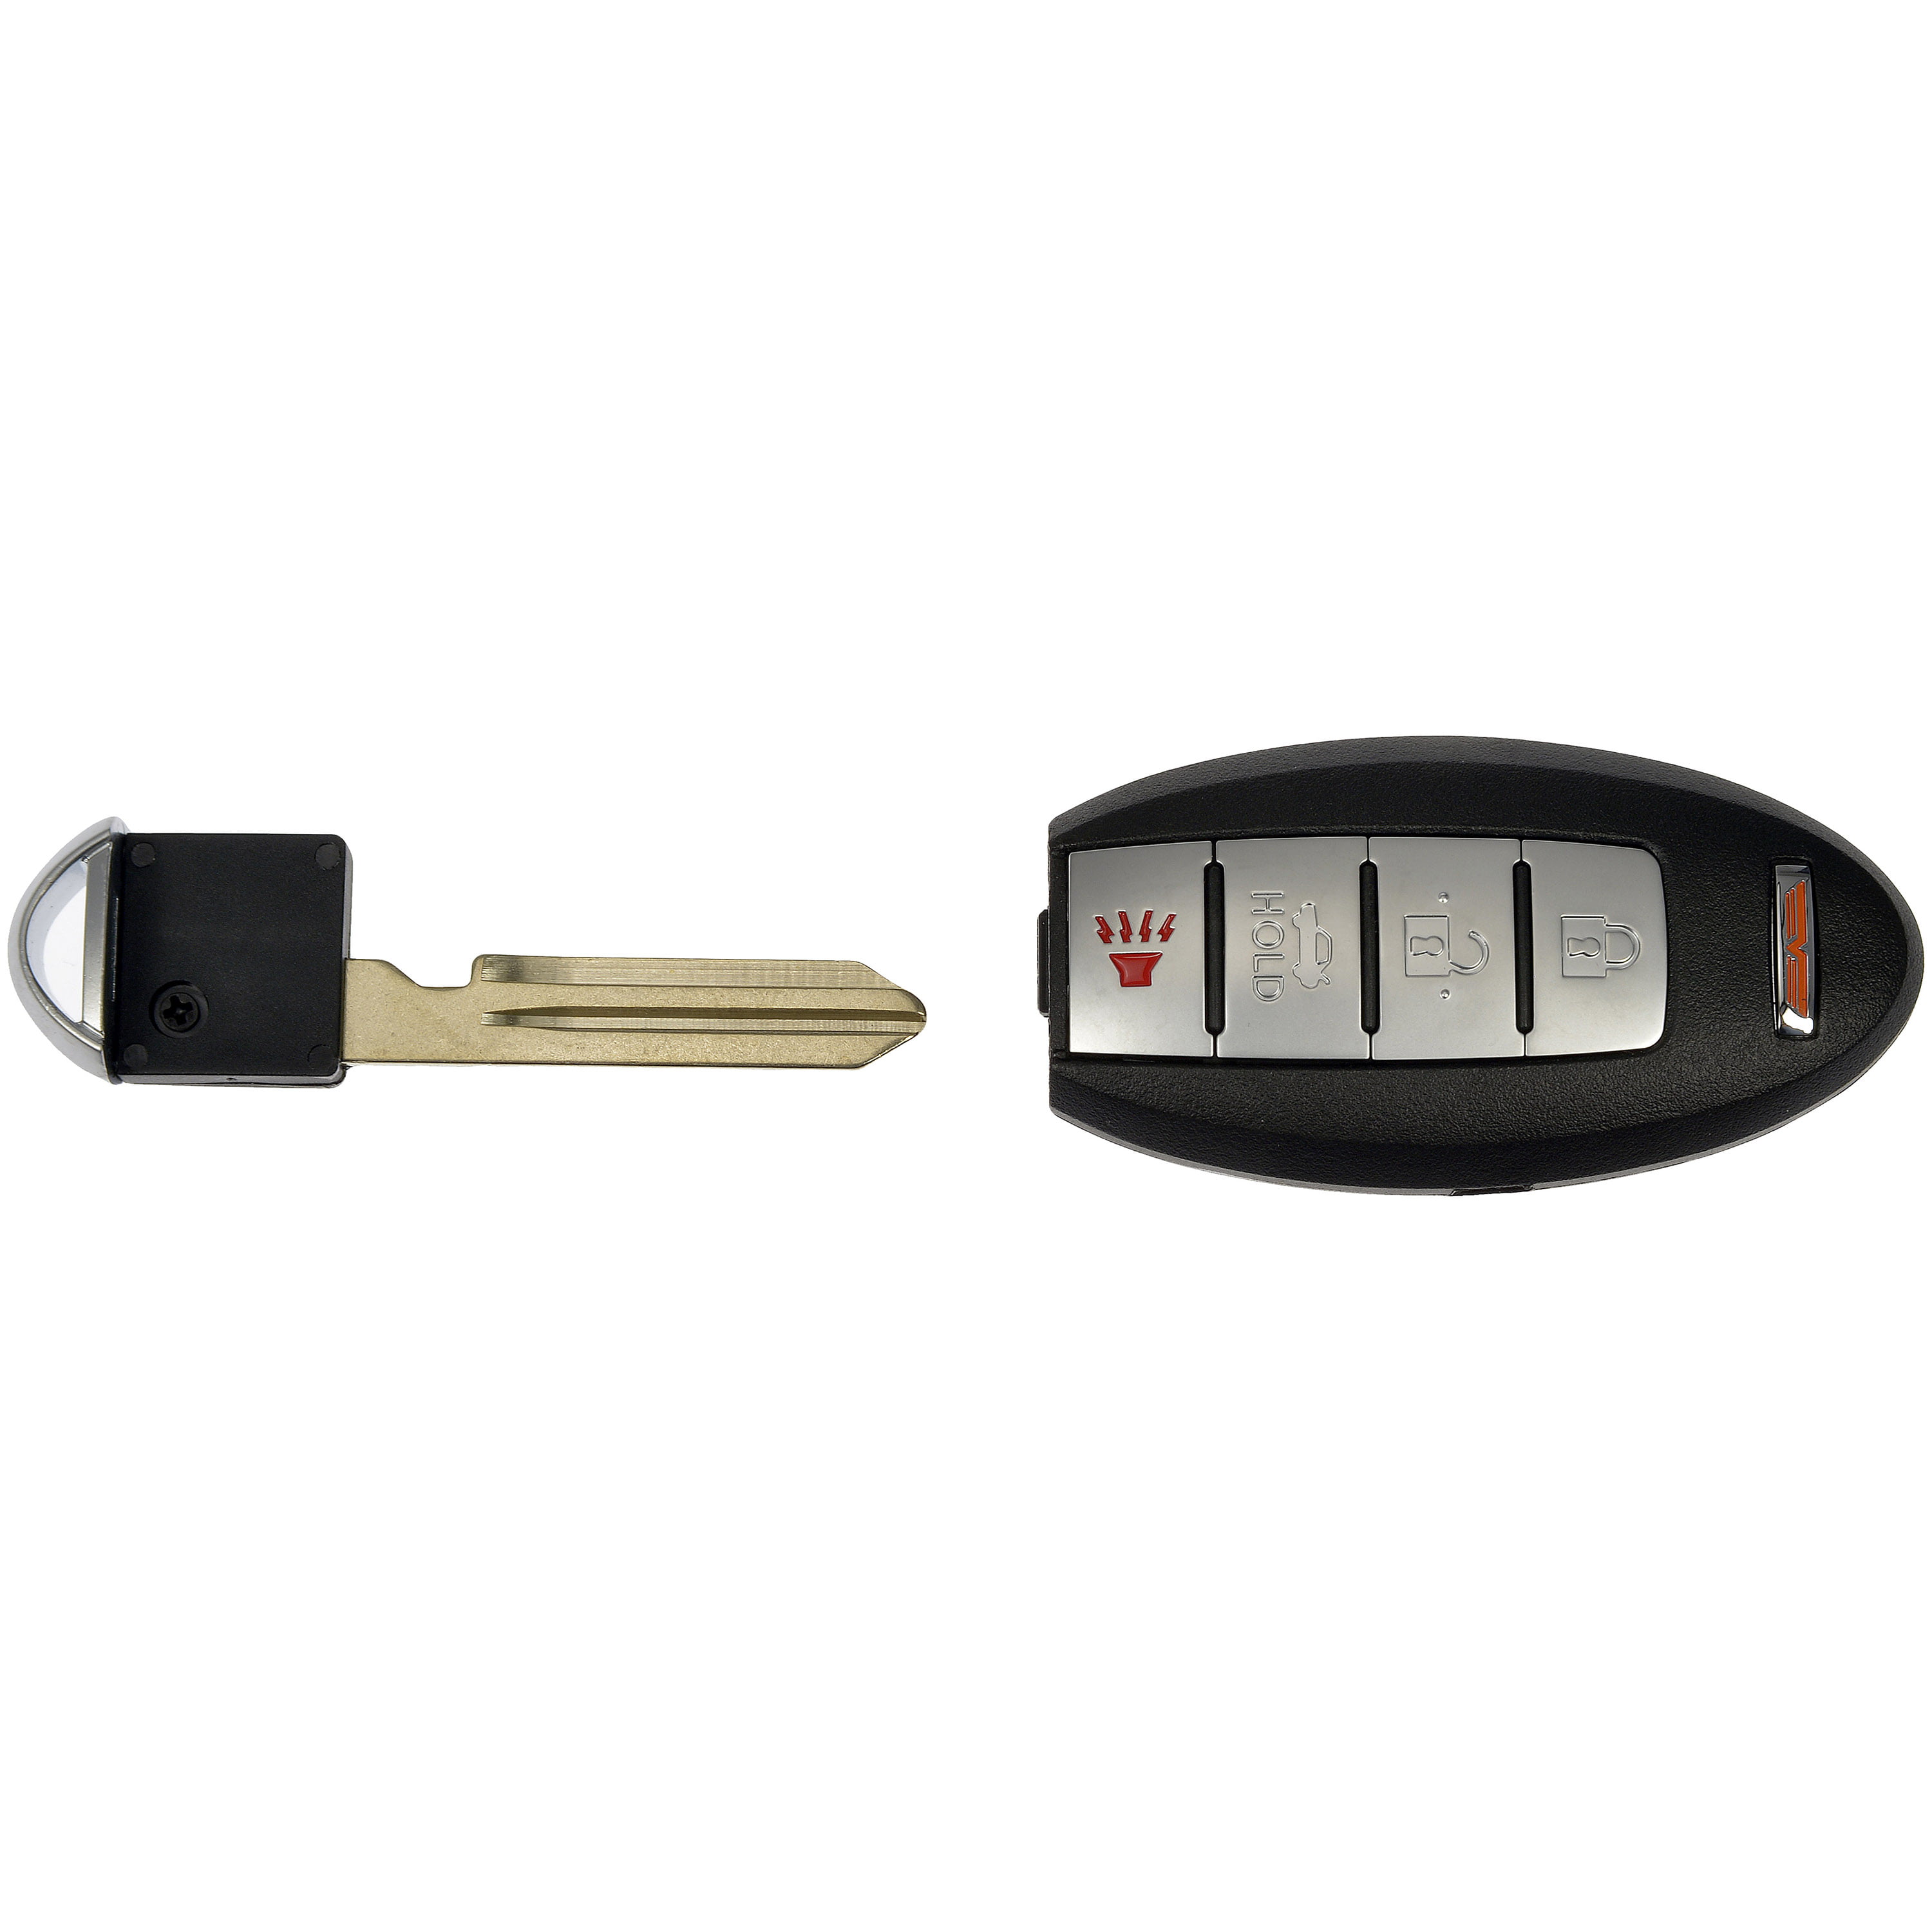 Dorman 99159 Keyless Entry Transmitter for Specific Infiniti / Nissan  Models, Black